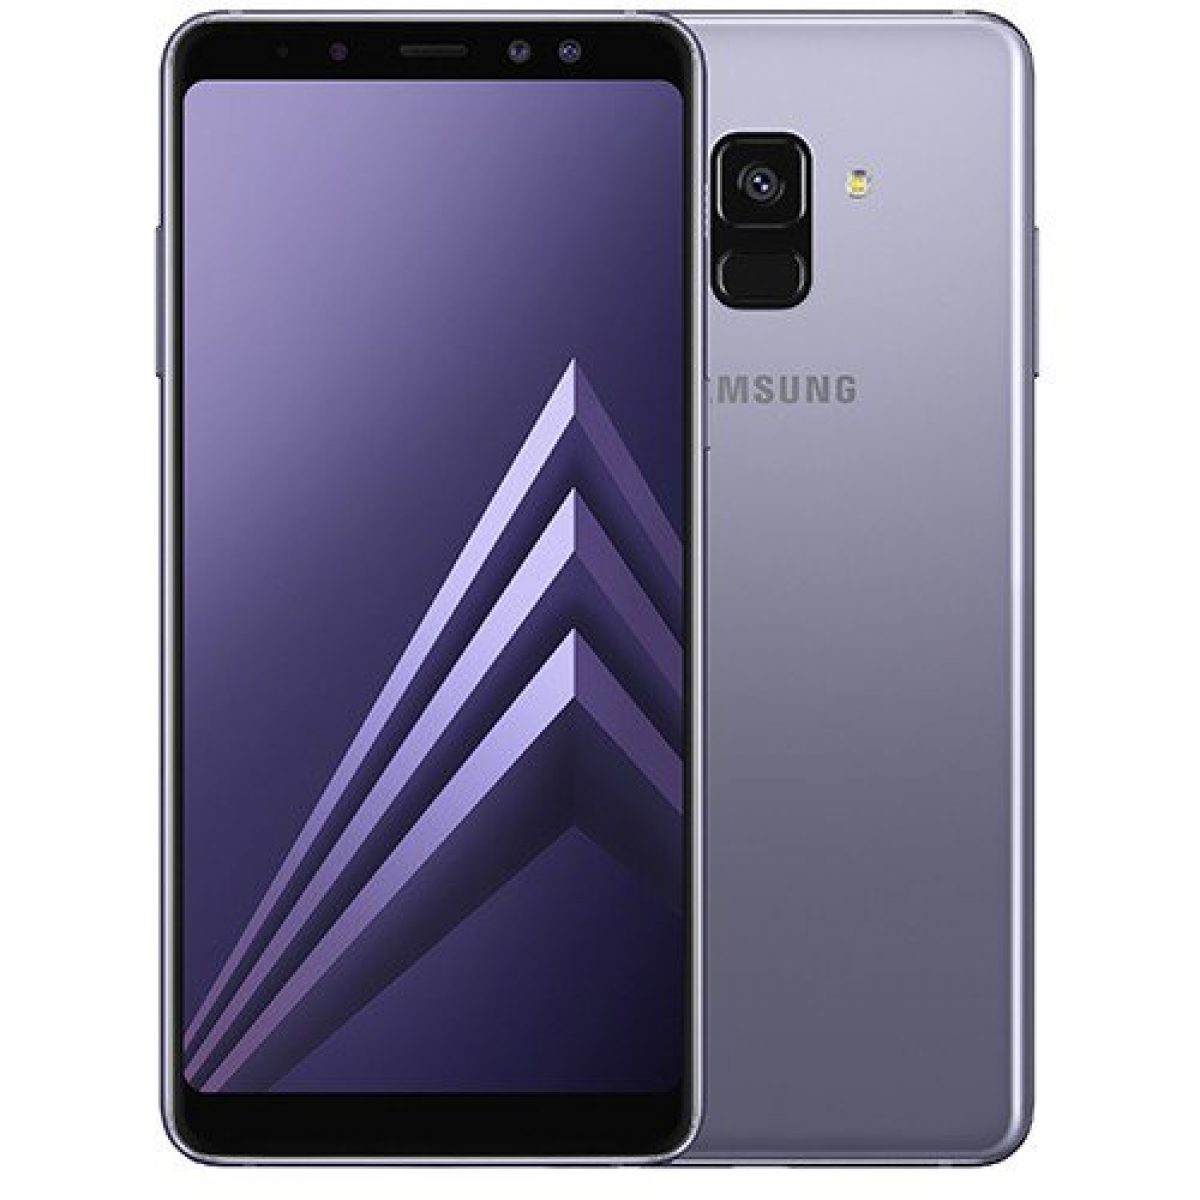 Cài hình nền và theme (chủ đề) cho máy Samsung Galaxy A8 - Thegioididong.com